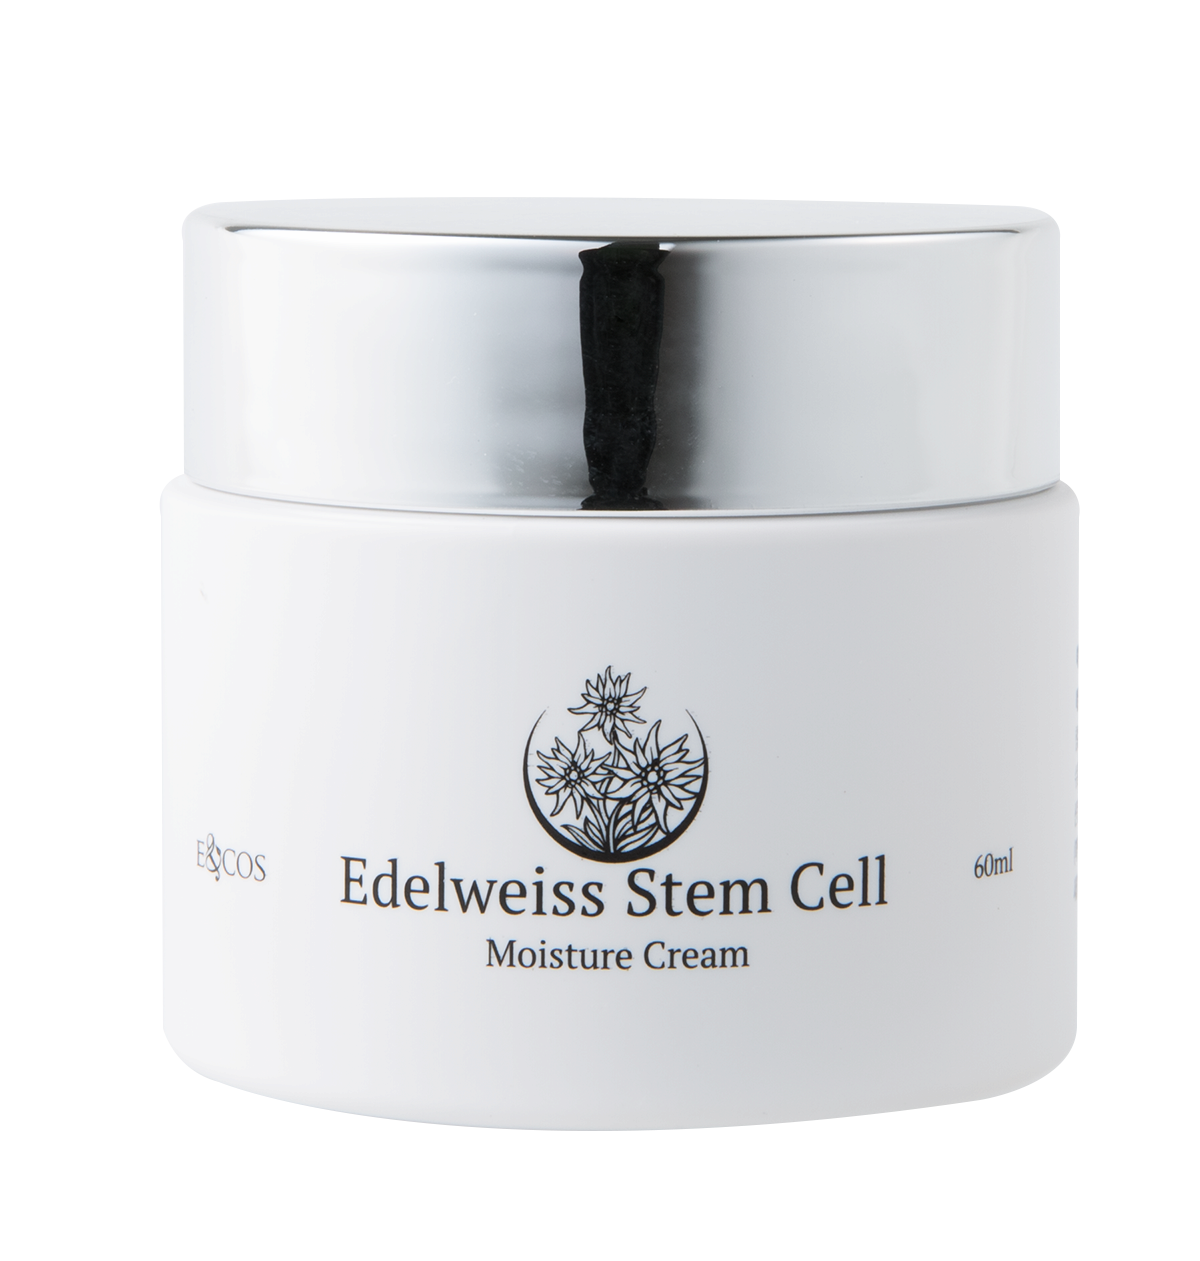 Edelweiss Stem Cell Moisture Cream